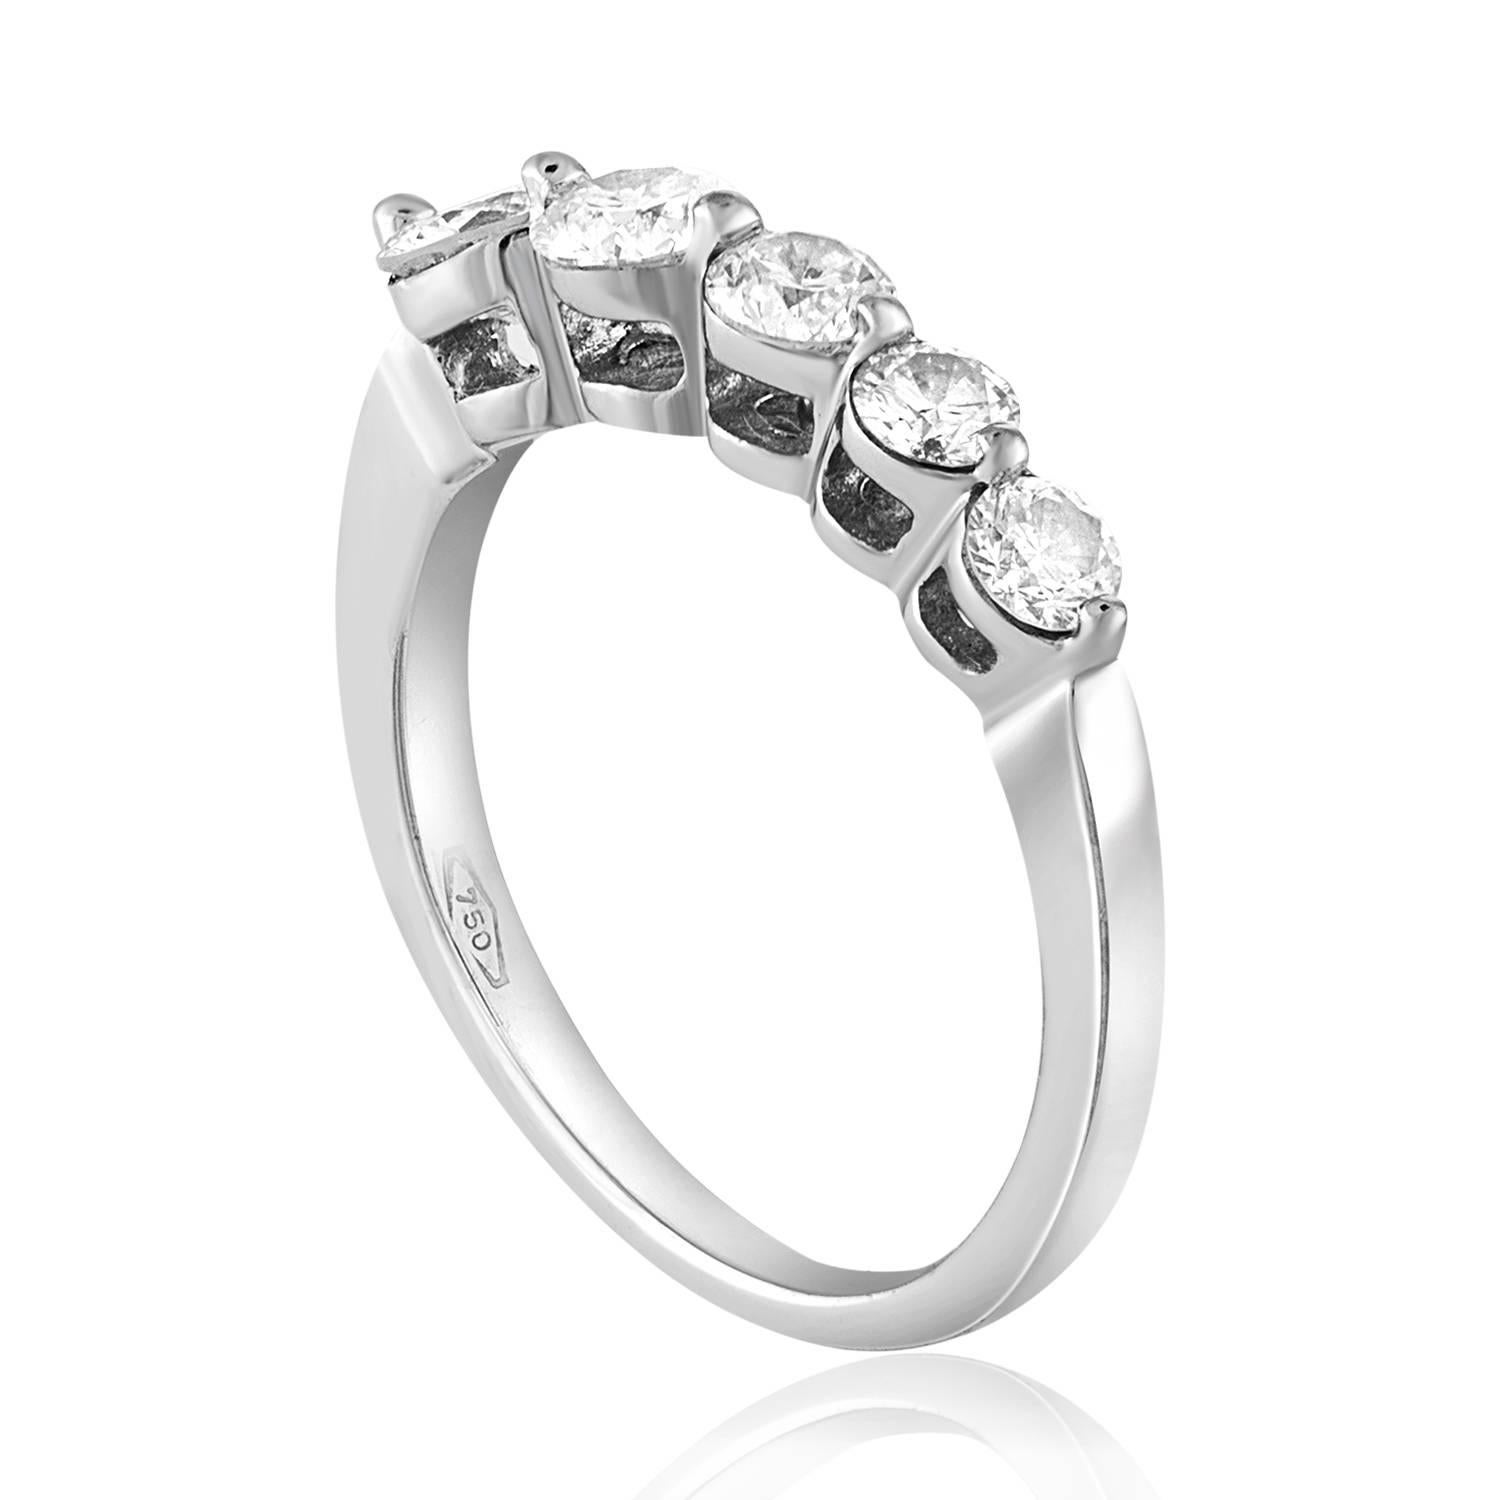 Sehr schöner graduierter Diamant-Halbbandring
Der Ring ist 18K Weißgold
Es sind 5 Diamanten mit Rundschliff in Zacken gesetzt
Es sind insgesamt 0,70 Karat in Diamanten E VS
Der Ring ist eine Größe 4,75, sizable. 
Der Ring wiegt 2,6 Gramm.